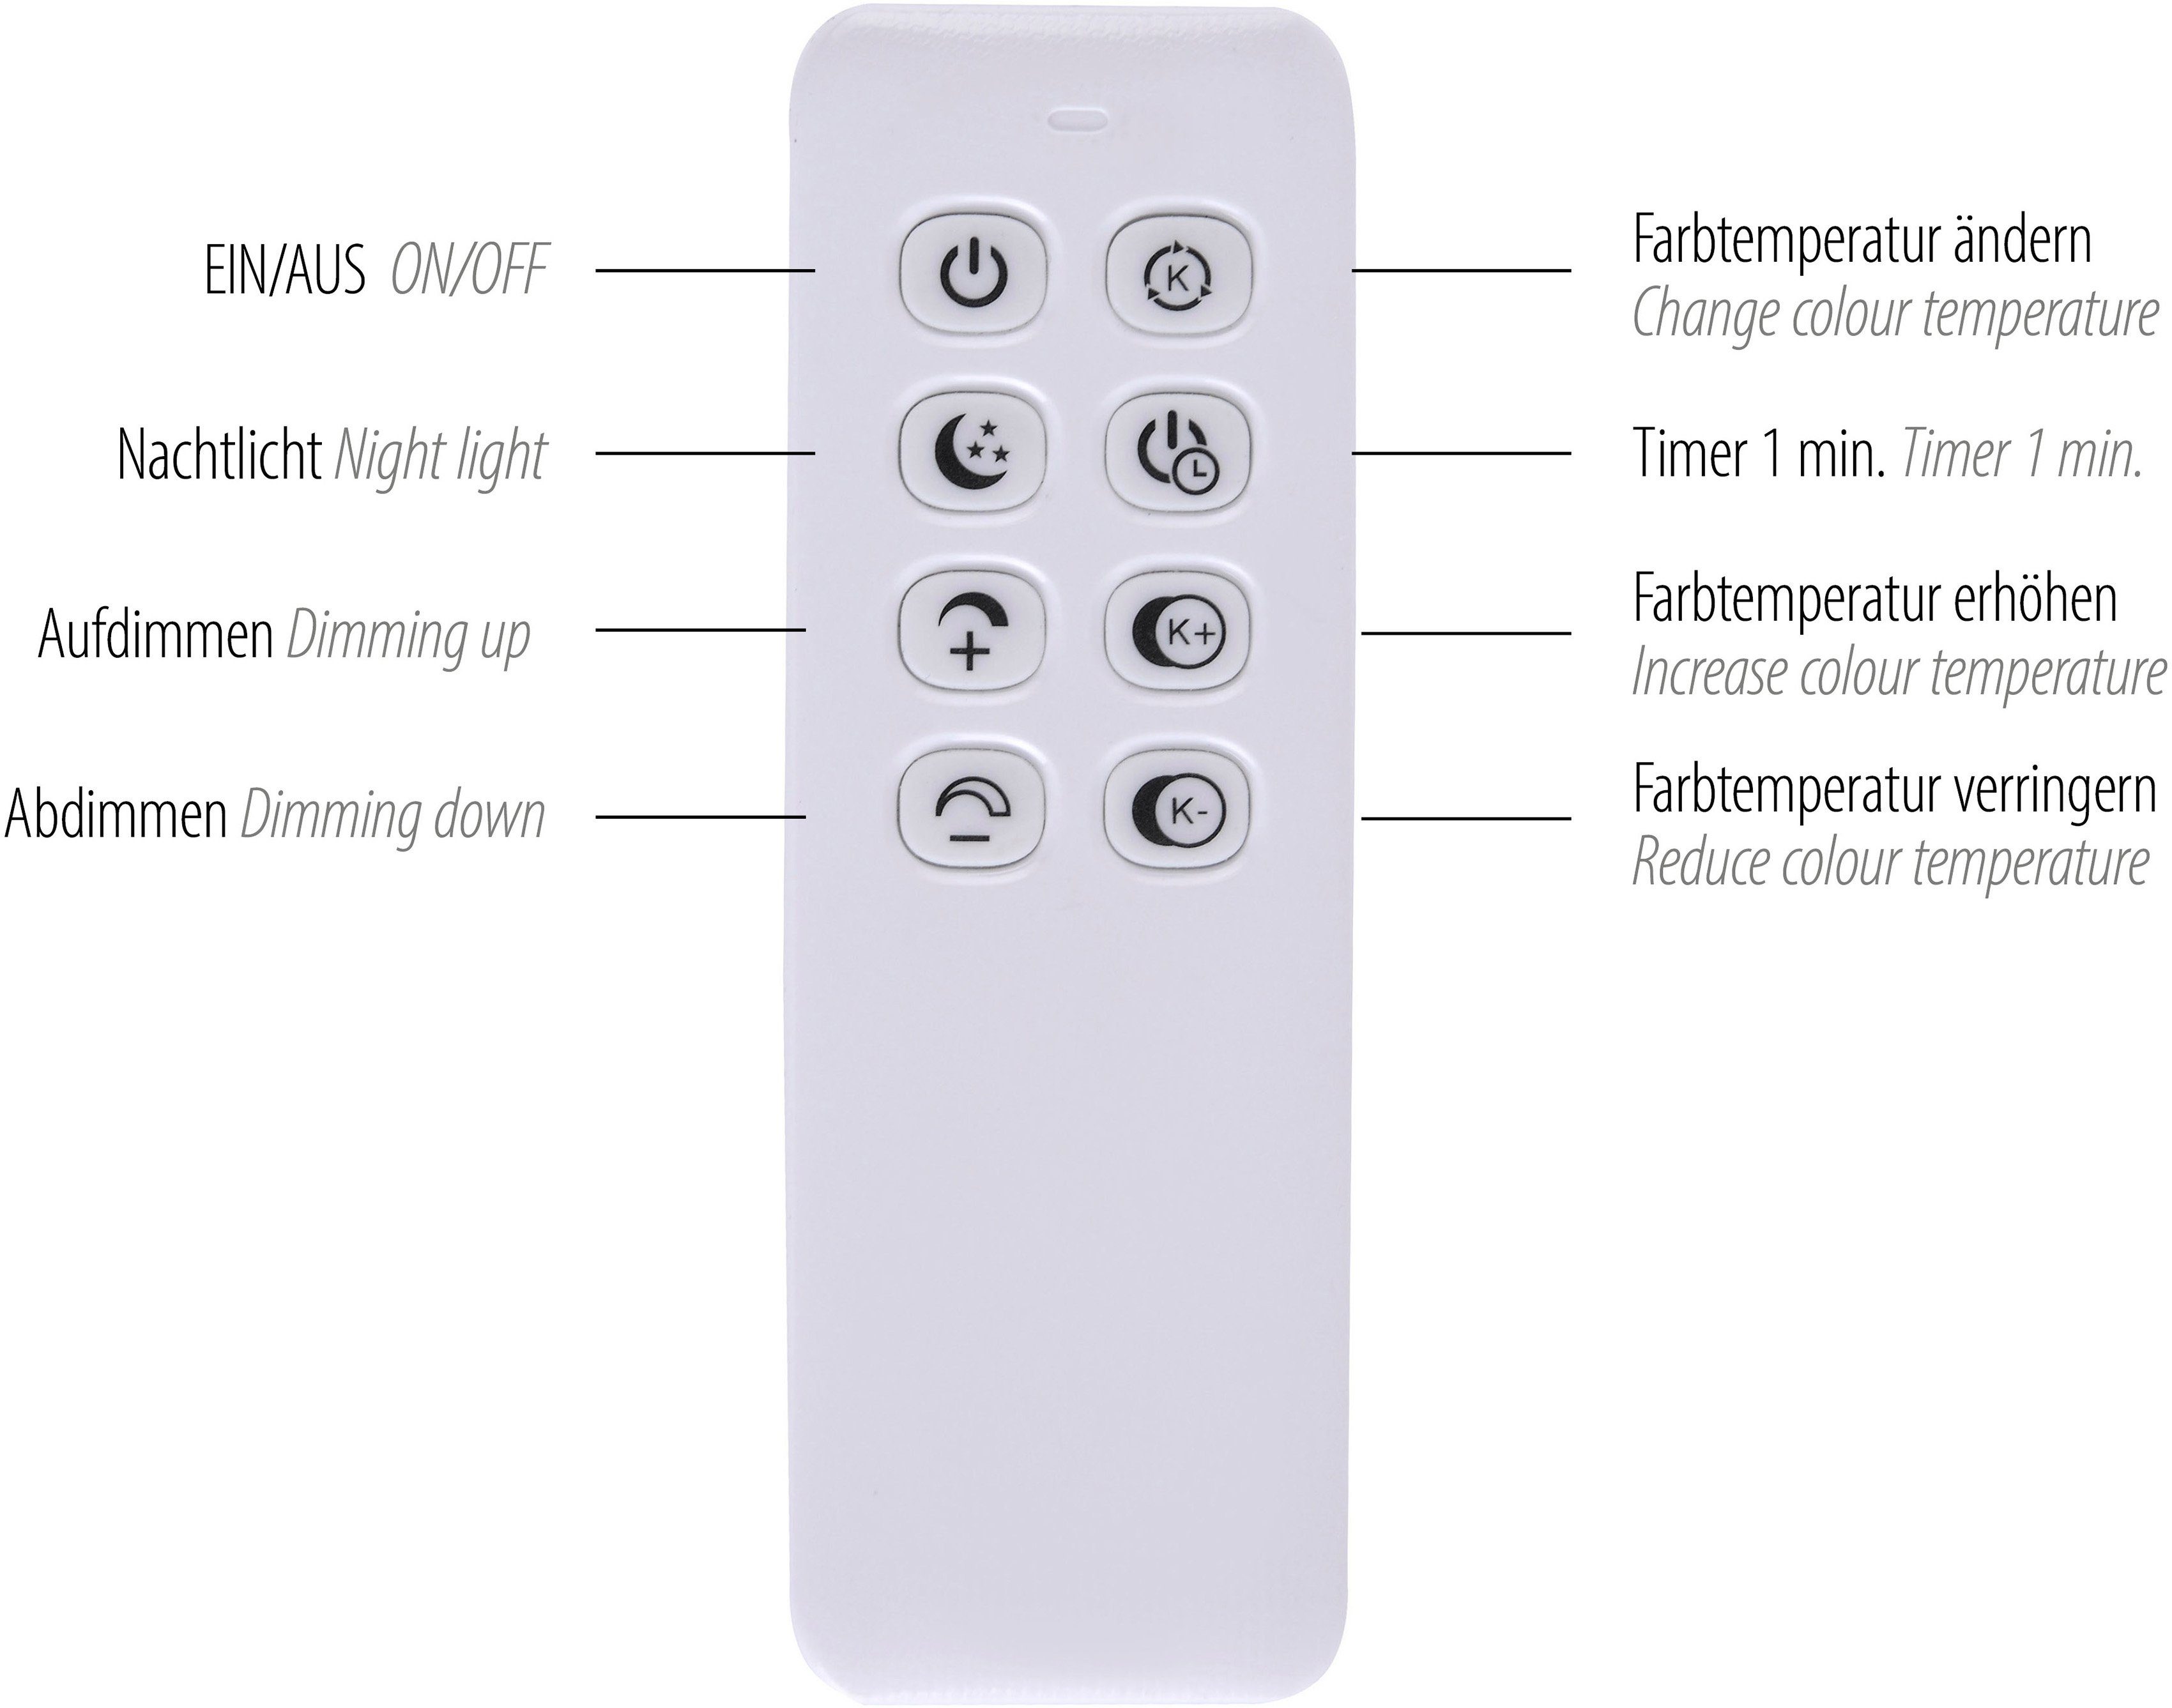 LED inkl. - Ablage, Home Farbtemperatursteuerung LED fest Fernbed., dimmbar integriert, kaltweiß, über affaire Hängelampe Pommerby, warmweiß Fernbedienung, Pendelleuchte mit